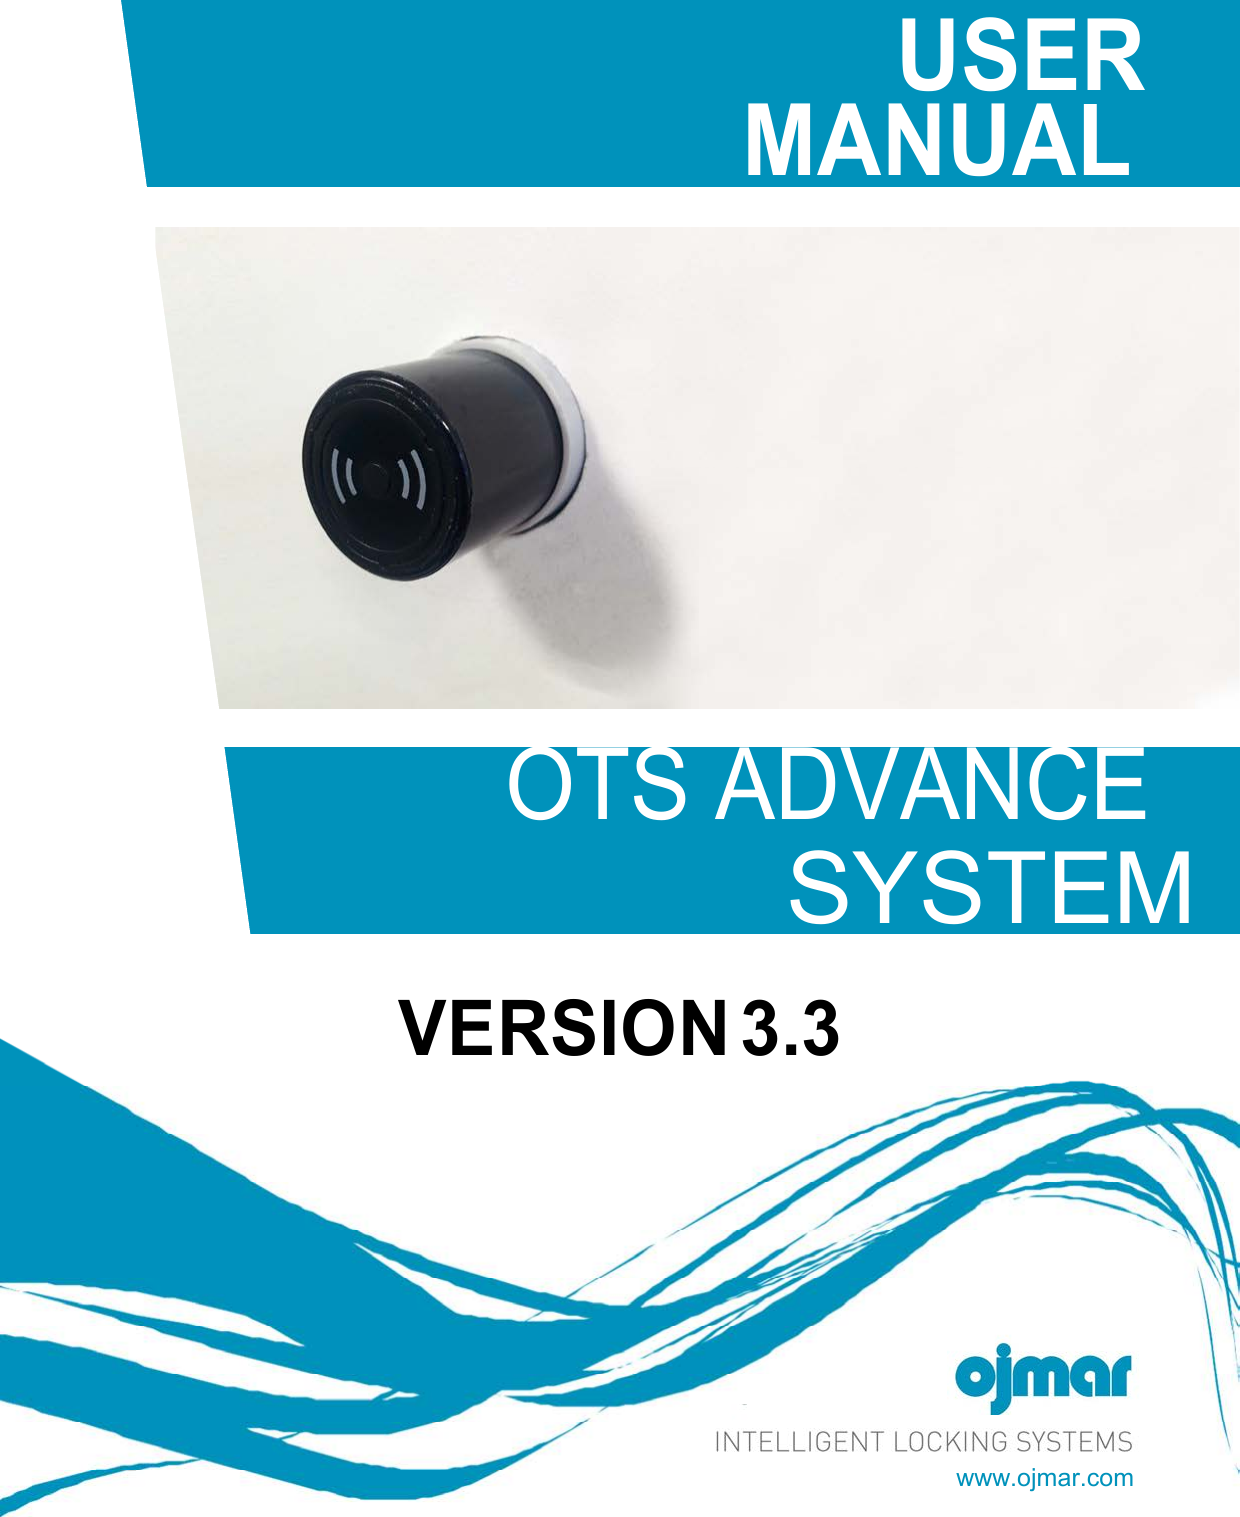 www.ojmar.com      USER MANUAL                       OTS ADVANCE SYSTEM VERSION 3.3 